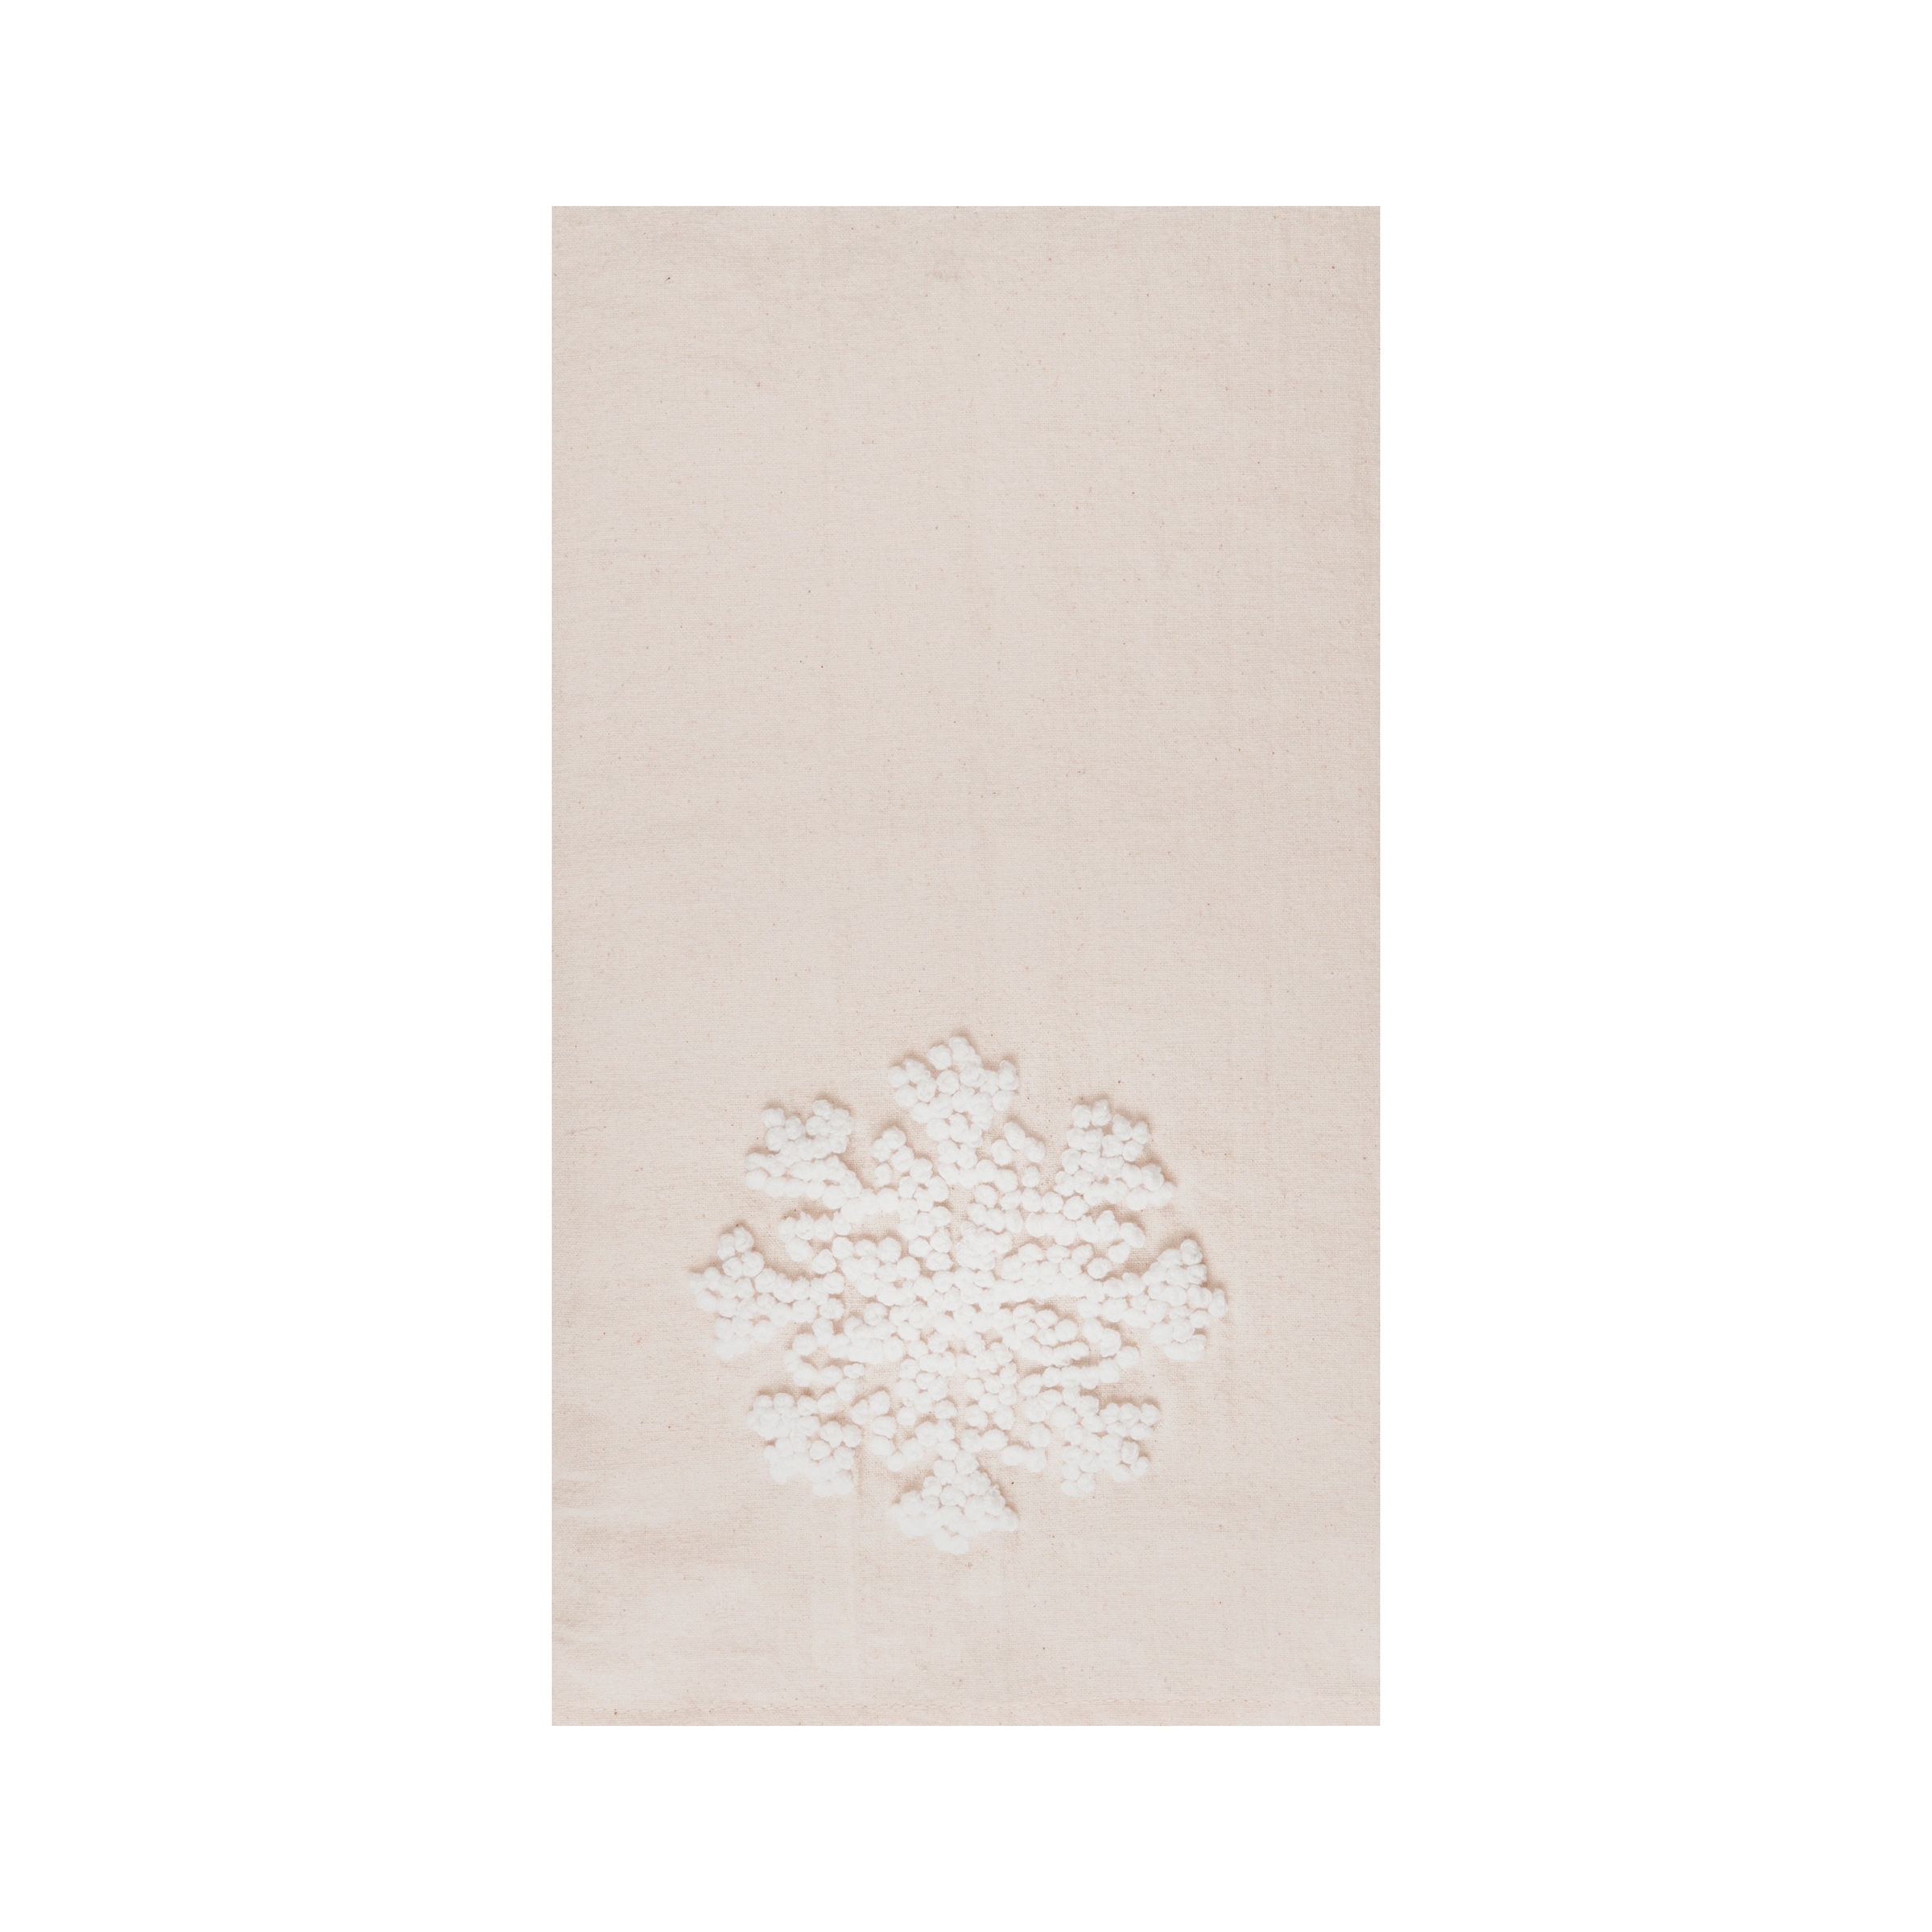 Grey Flour Sack Towels, set of 3 - Whisk